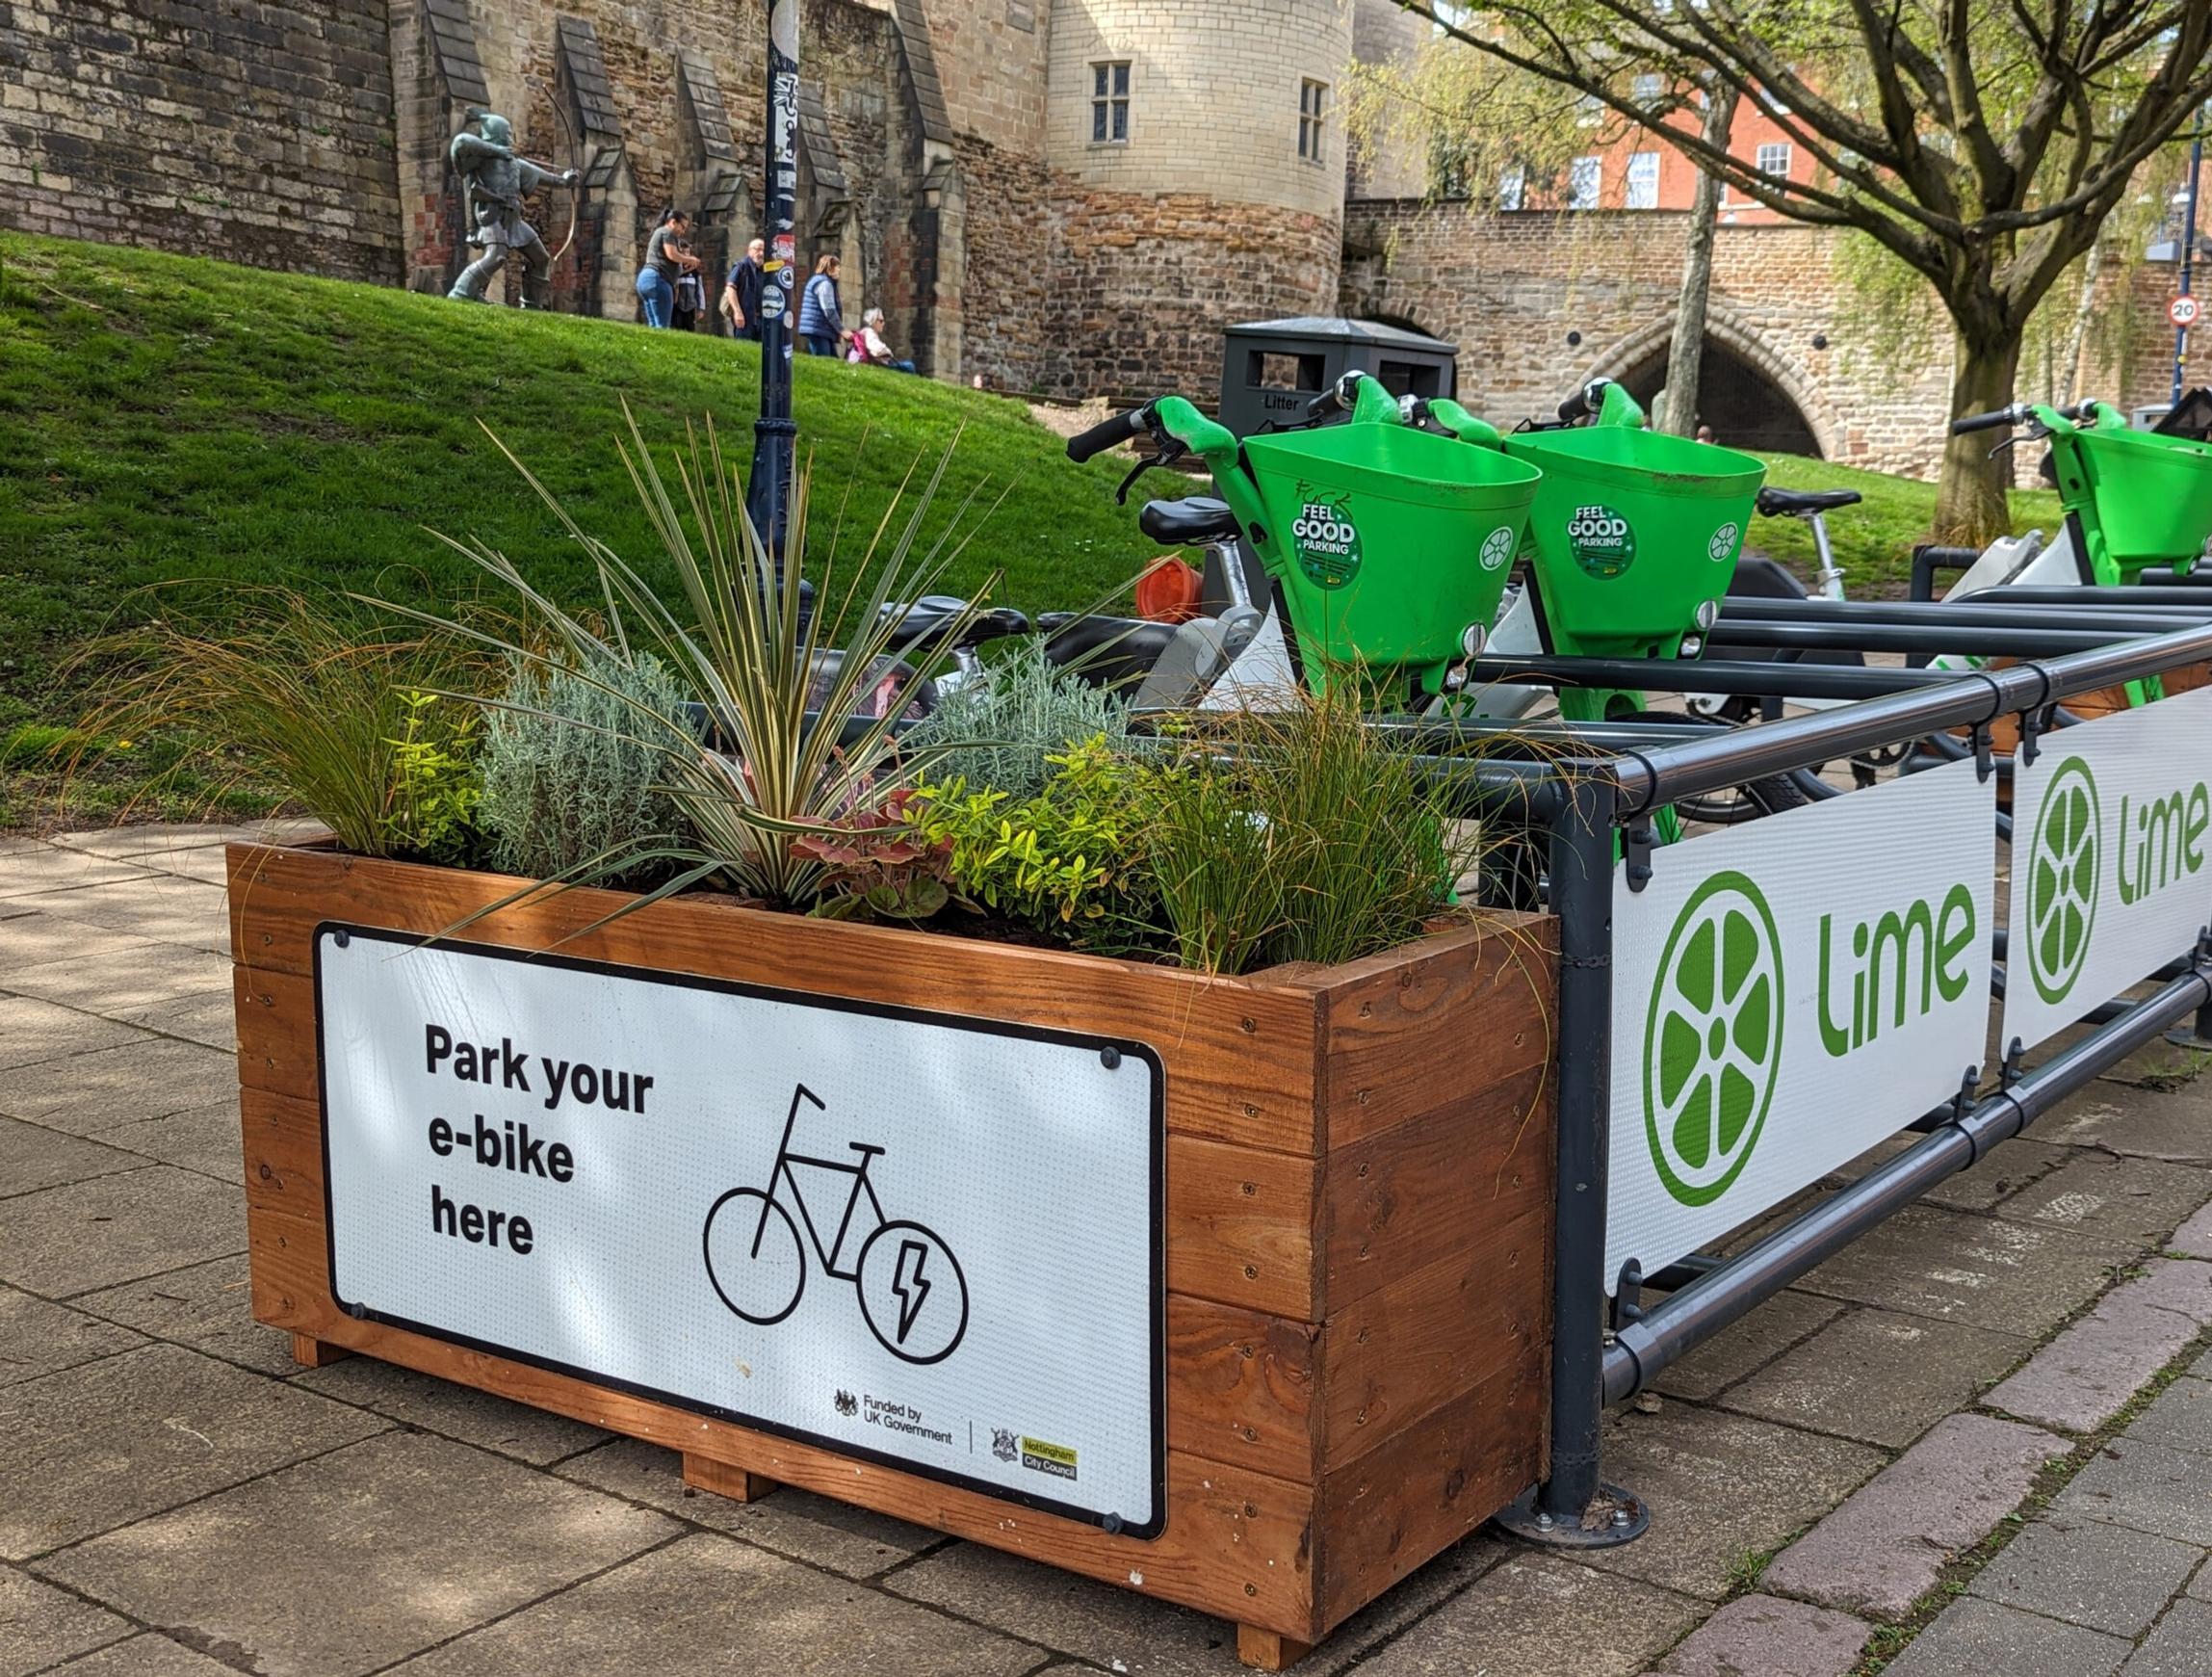 Lime e-bike parking